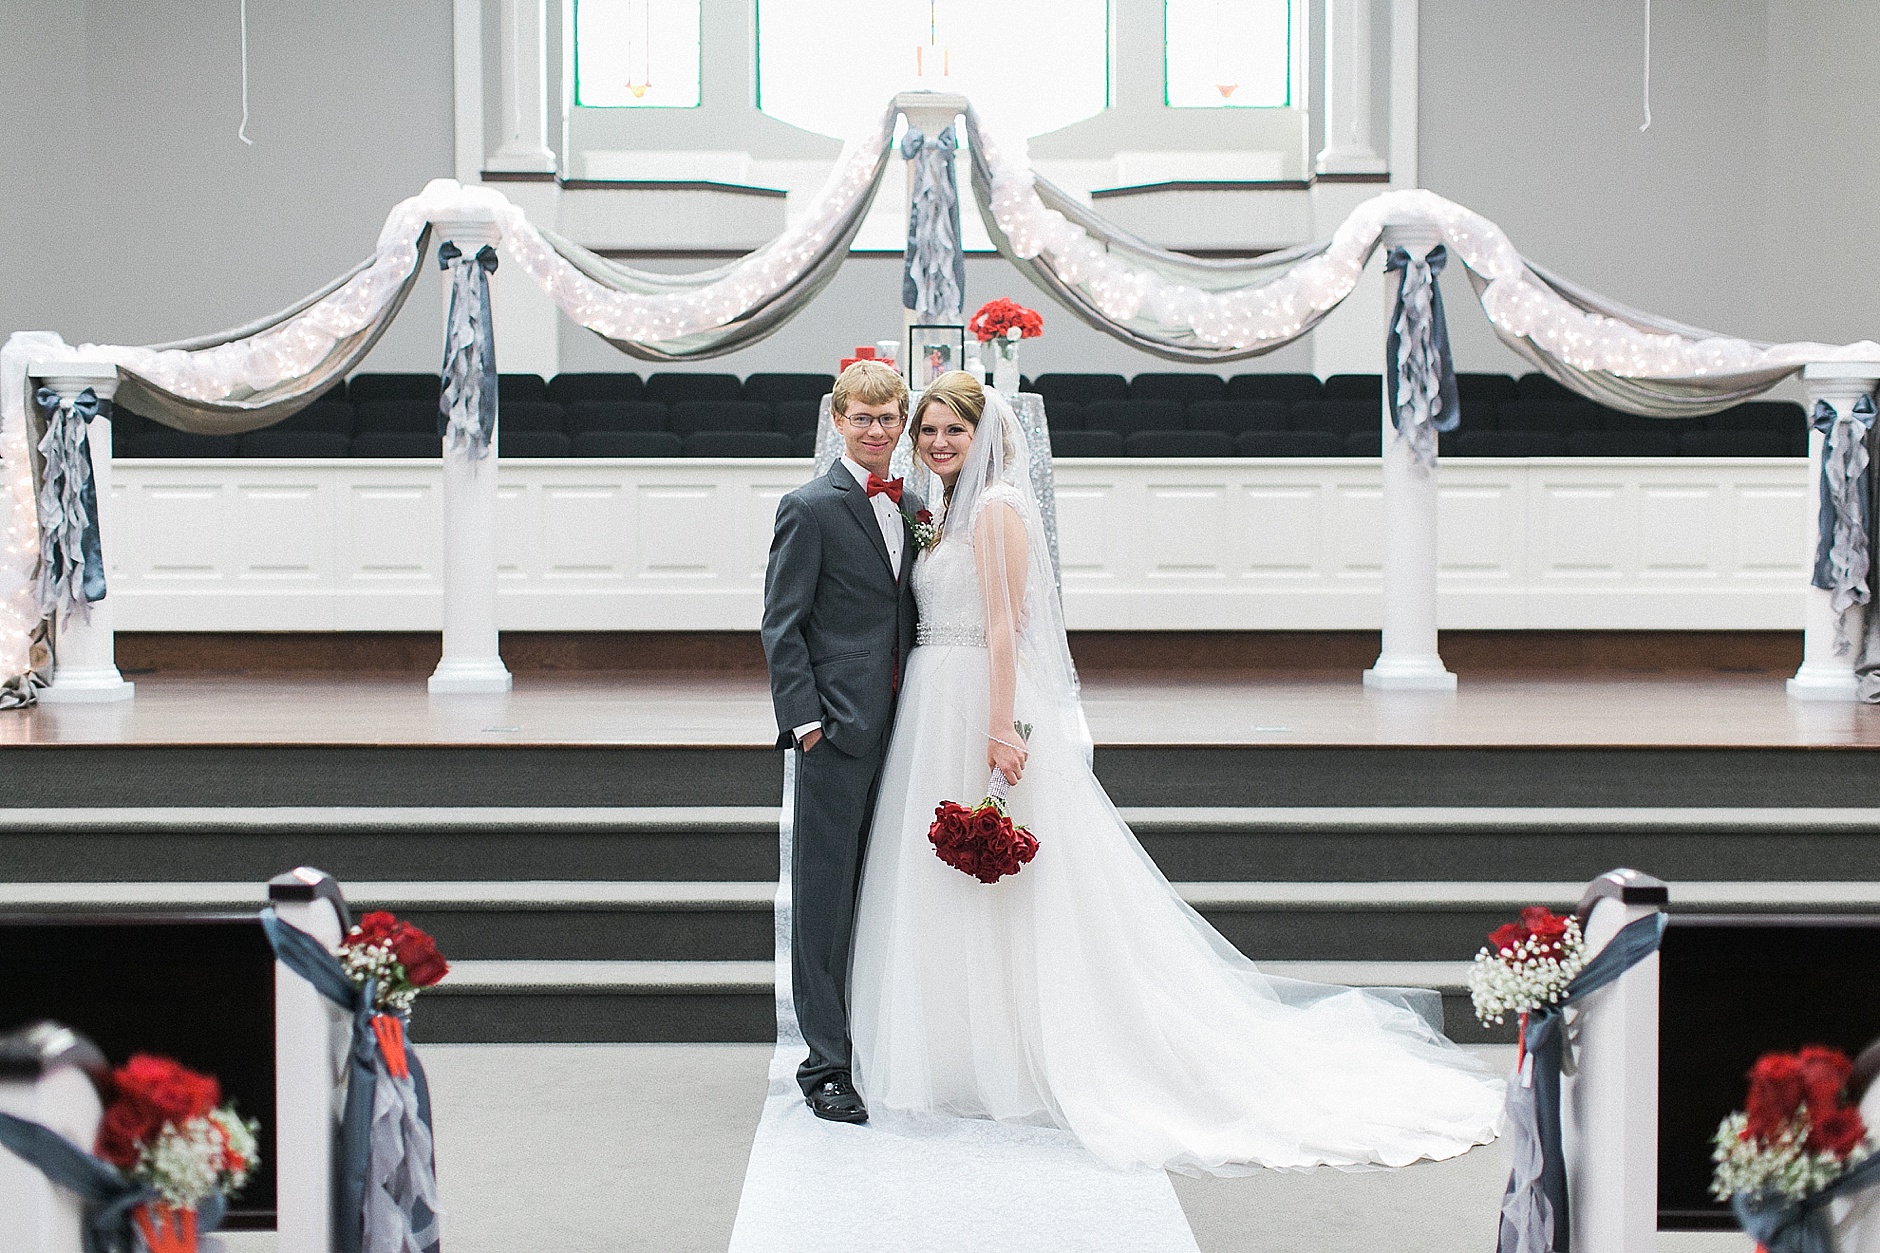 A Benton Kentucky Wedding, Rachael Houser Photography